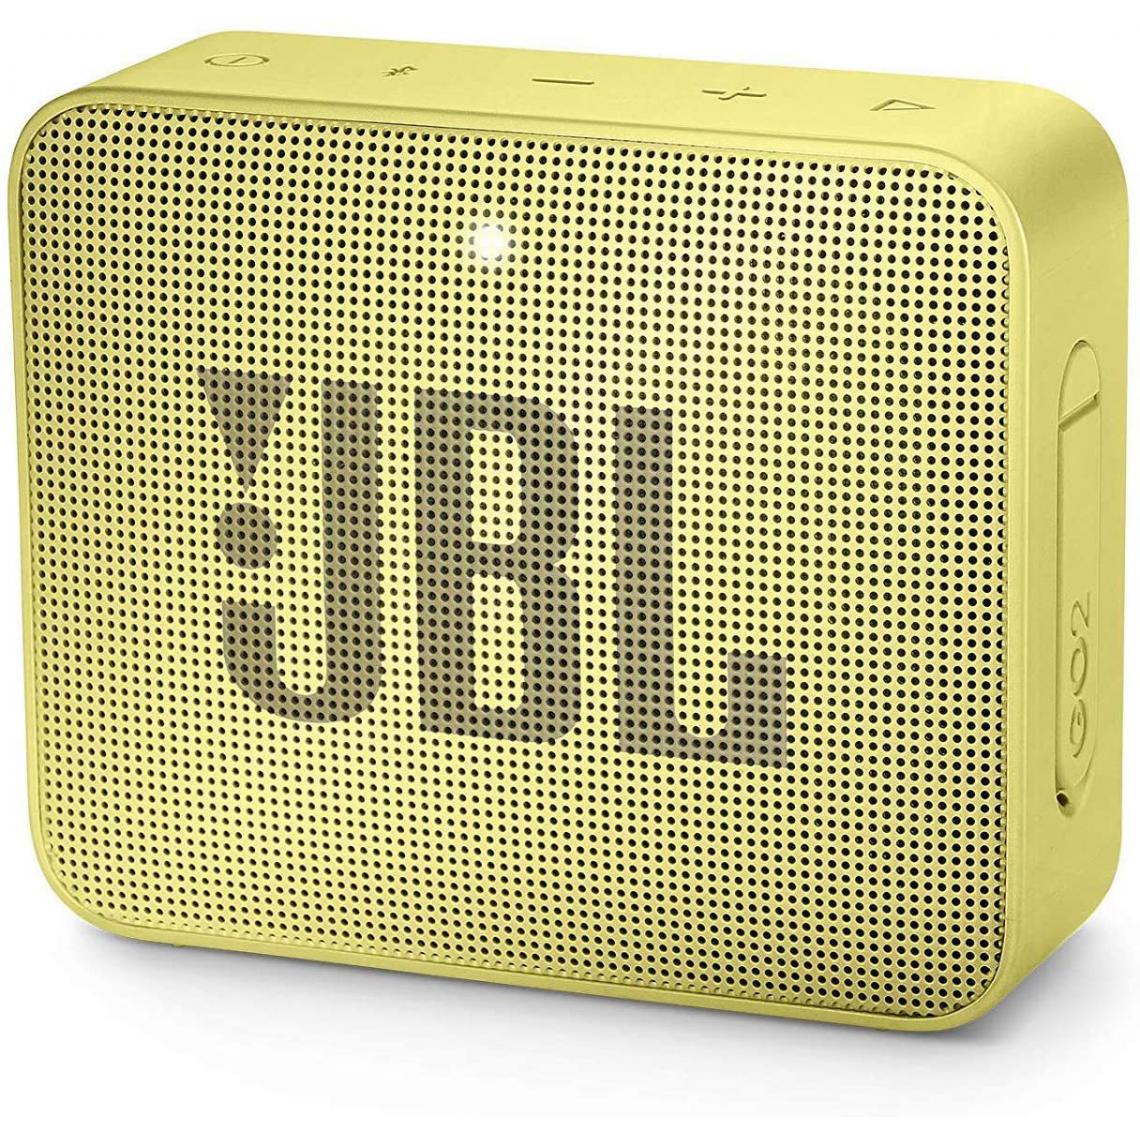 Chrono - Mini Enceinte Bluetooth portable - Étanche pour piscine & plage IPX7 - Autonomie 11hrs - Qualité audio JBL,Jaune - Enceintes Hifi